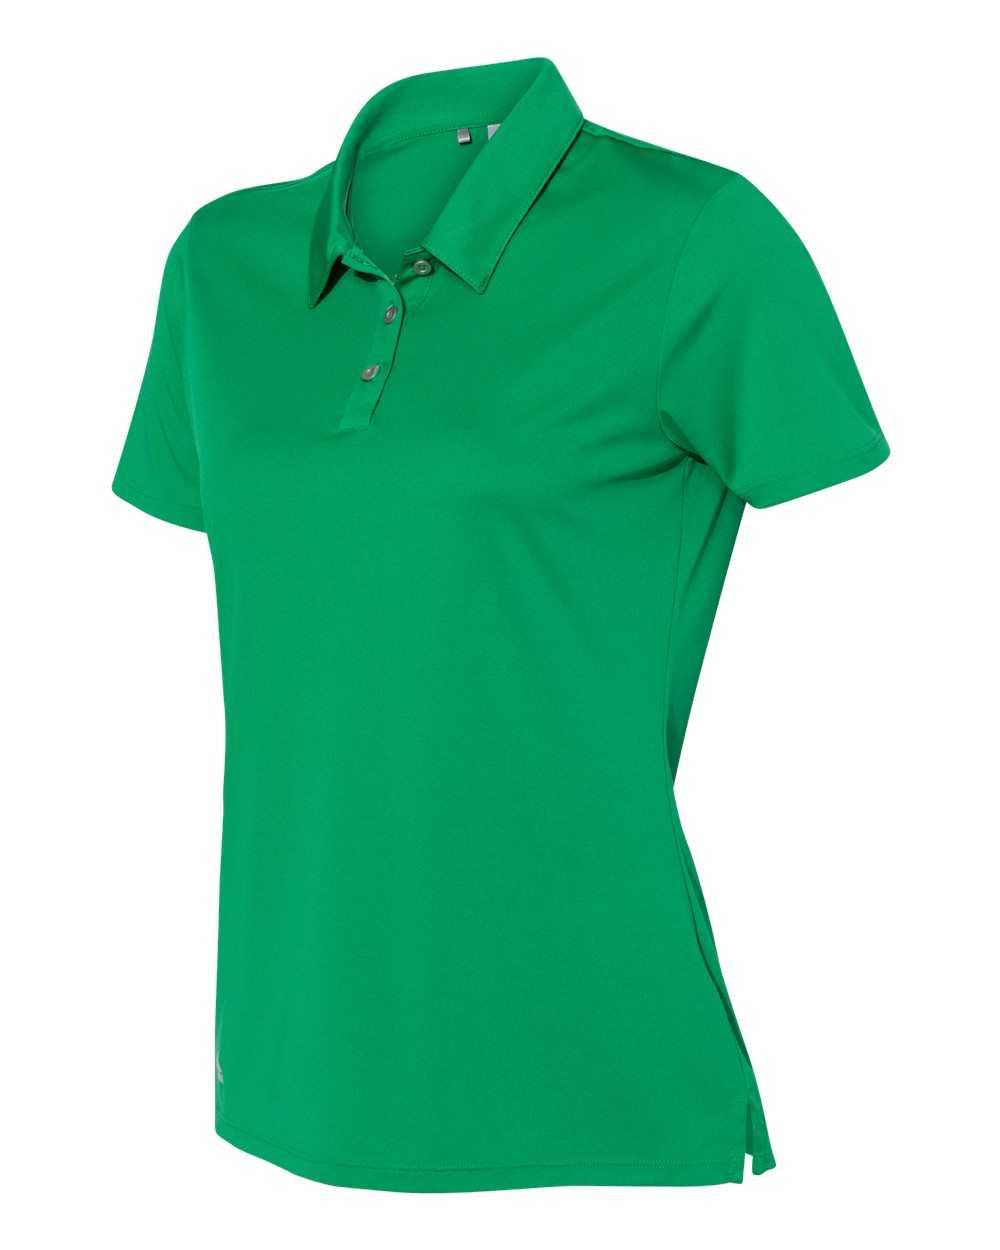 Adidas A231 Women's Performance Sport Shirt - Green - HIT a Double